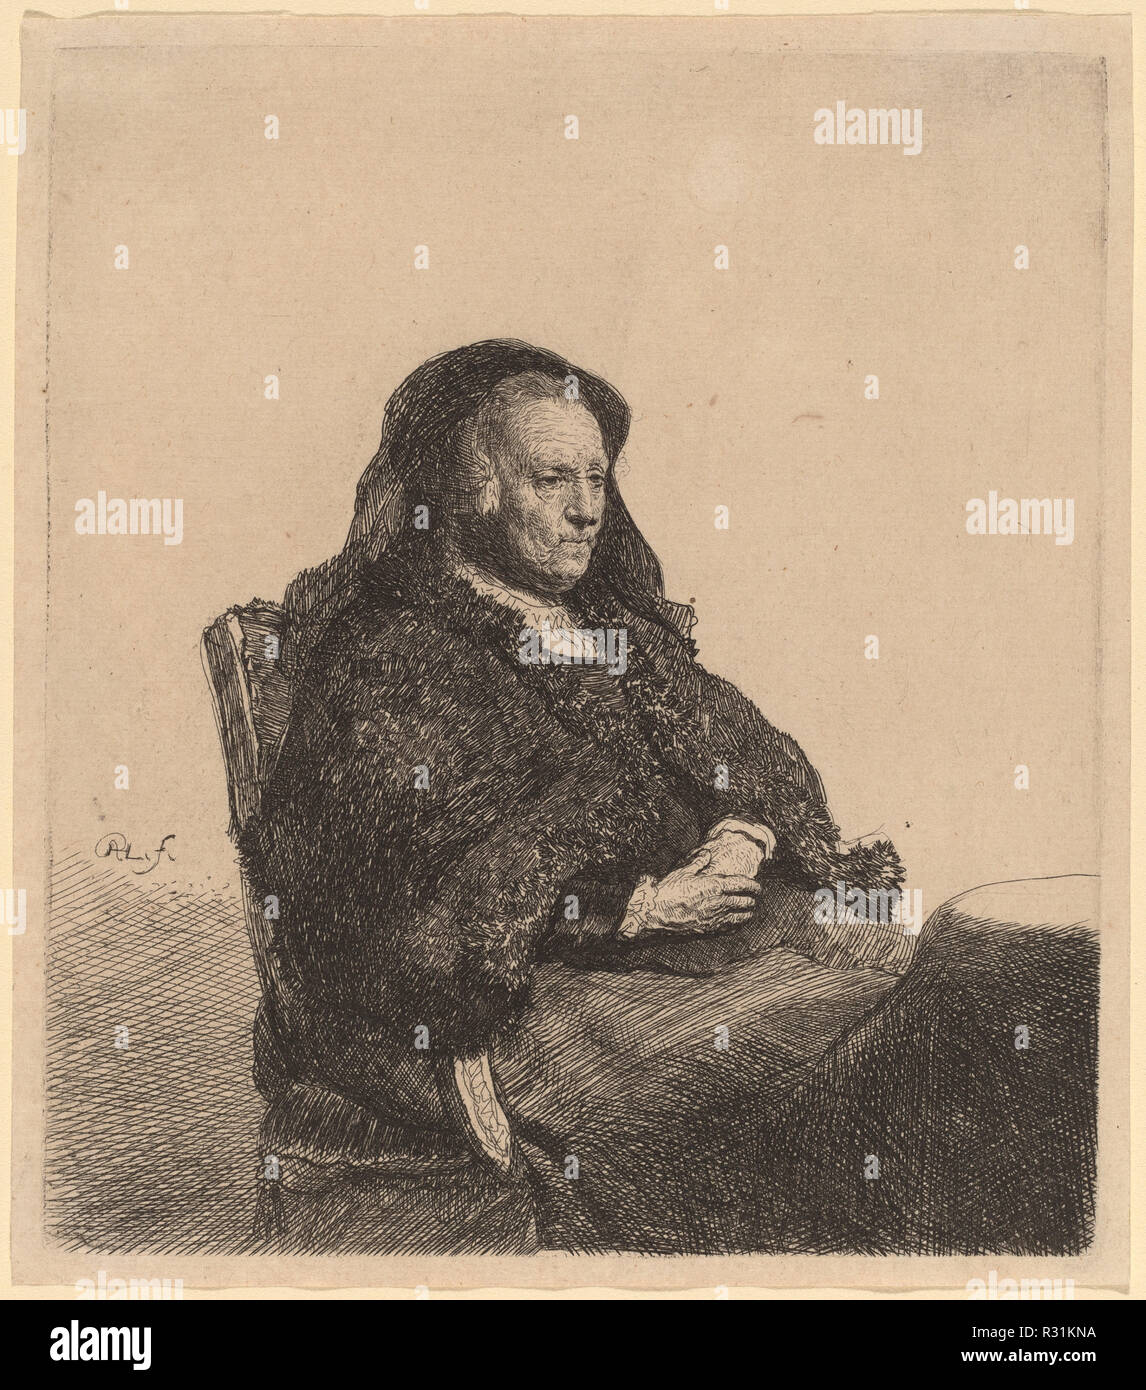 Mère de l'artiste assis à une table, à la droite. En date du : ch. 1631. Dimensions : plaque : 14,9 x 13 cm (5 7/8 x 5 1/8 in.) : 15,7 x 13,5 Fiche cm (6 3/16 x 5 5/16 in.). Technique : gravure. Musée : National Gallery of Art, Washington DC. Auteur : REMBRANDT, Harmenszoon van Rijn. Banque D'Images